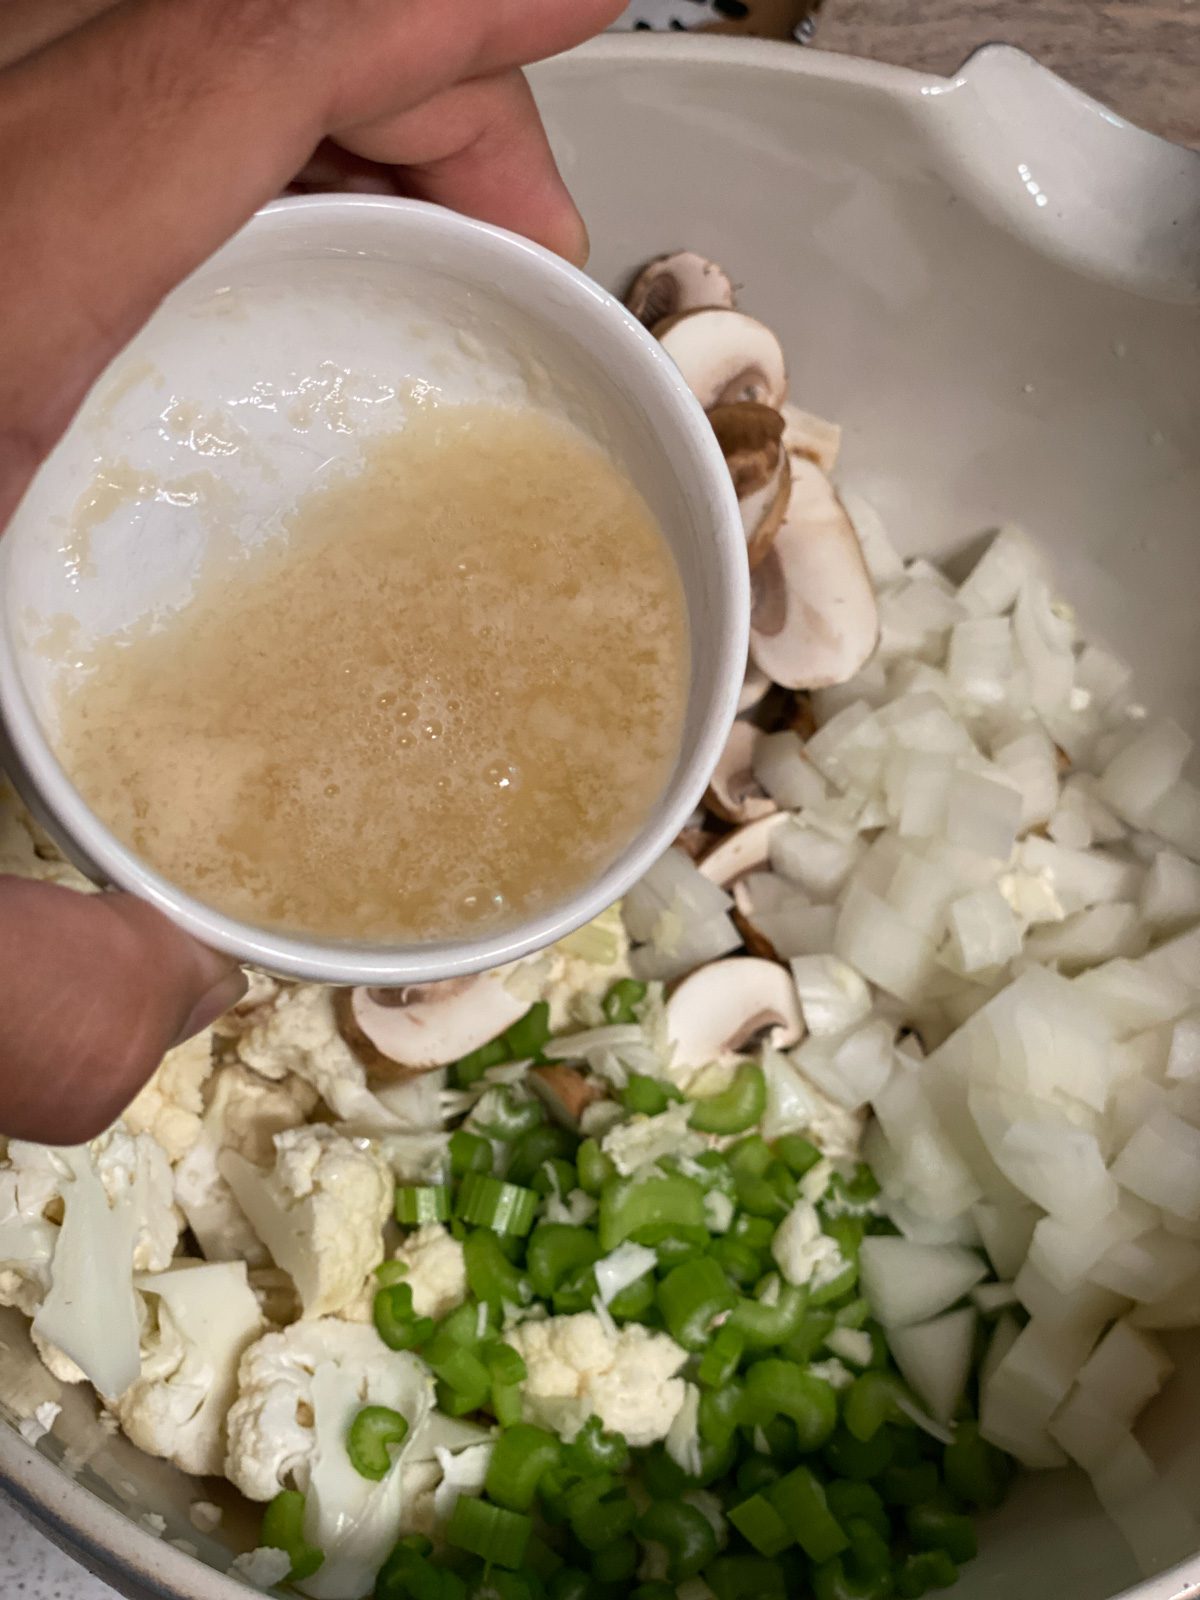 process shot of vegan butter being added to bowl of Vegan Cauliflower Stuffing ingredients